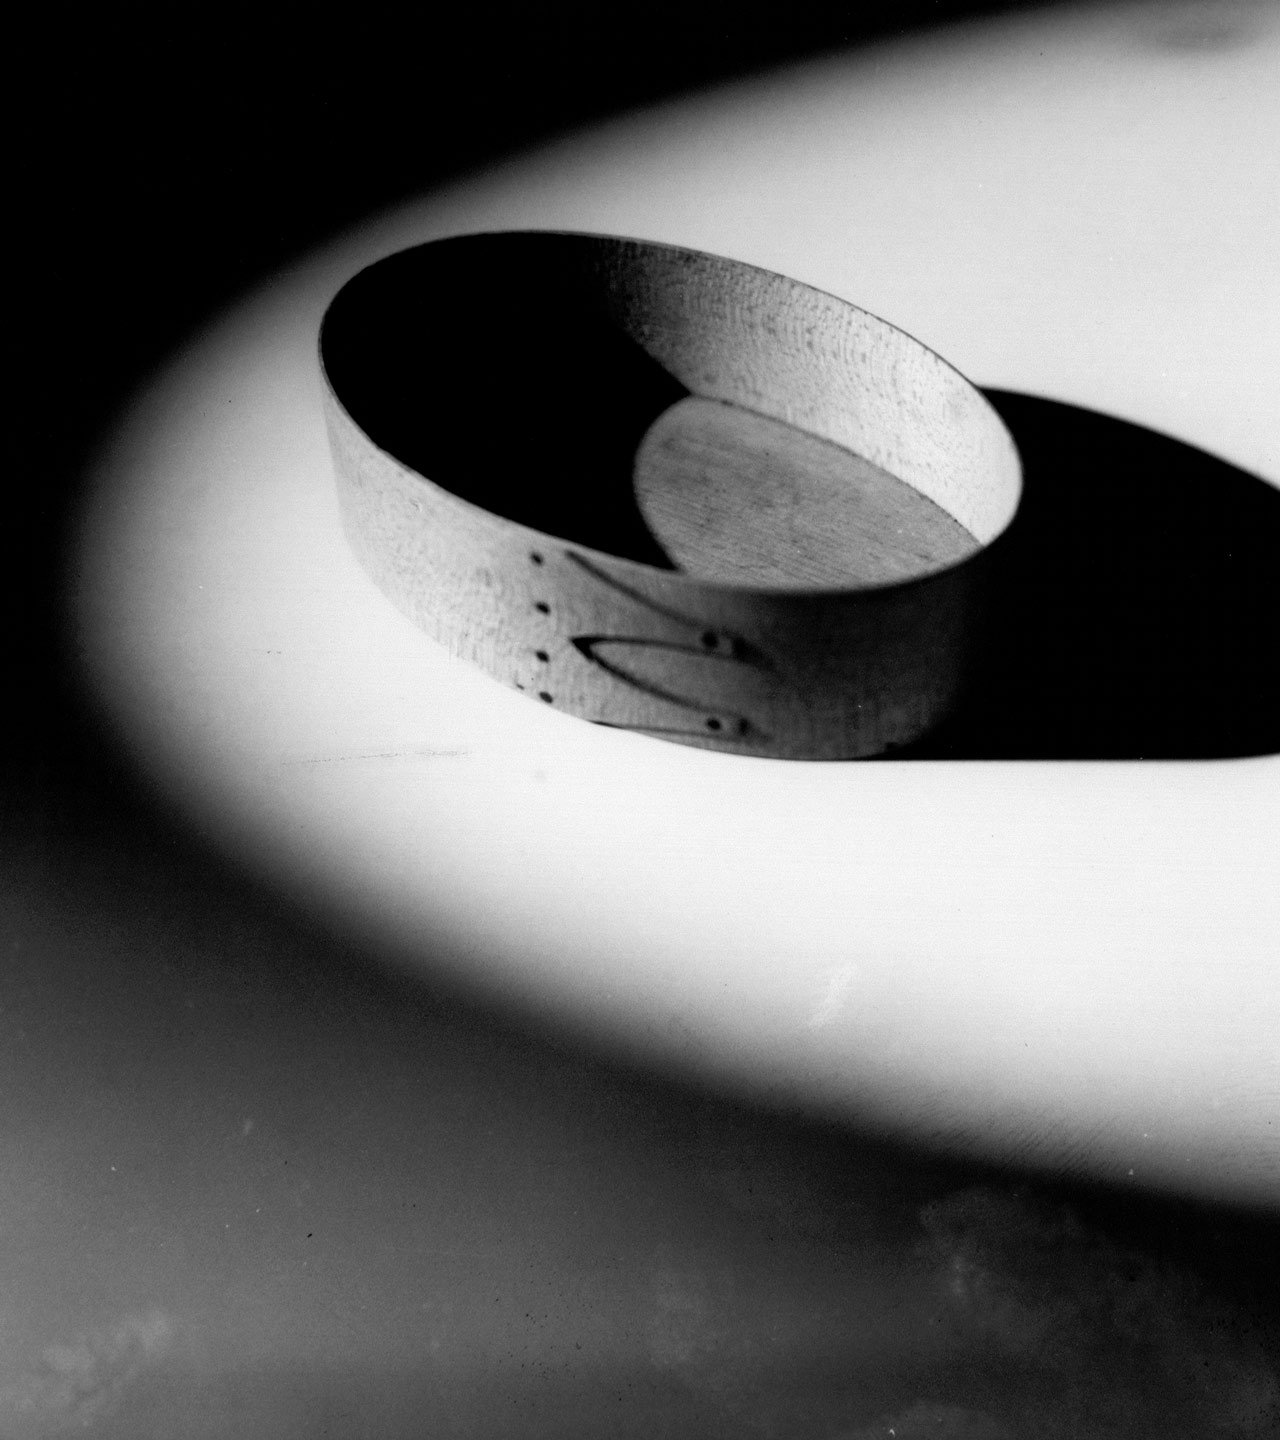 Box in oval light / Samuel Kravitt.